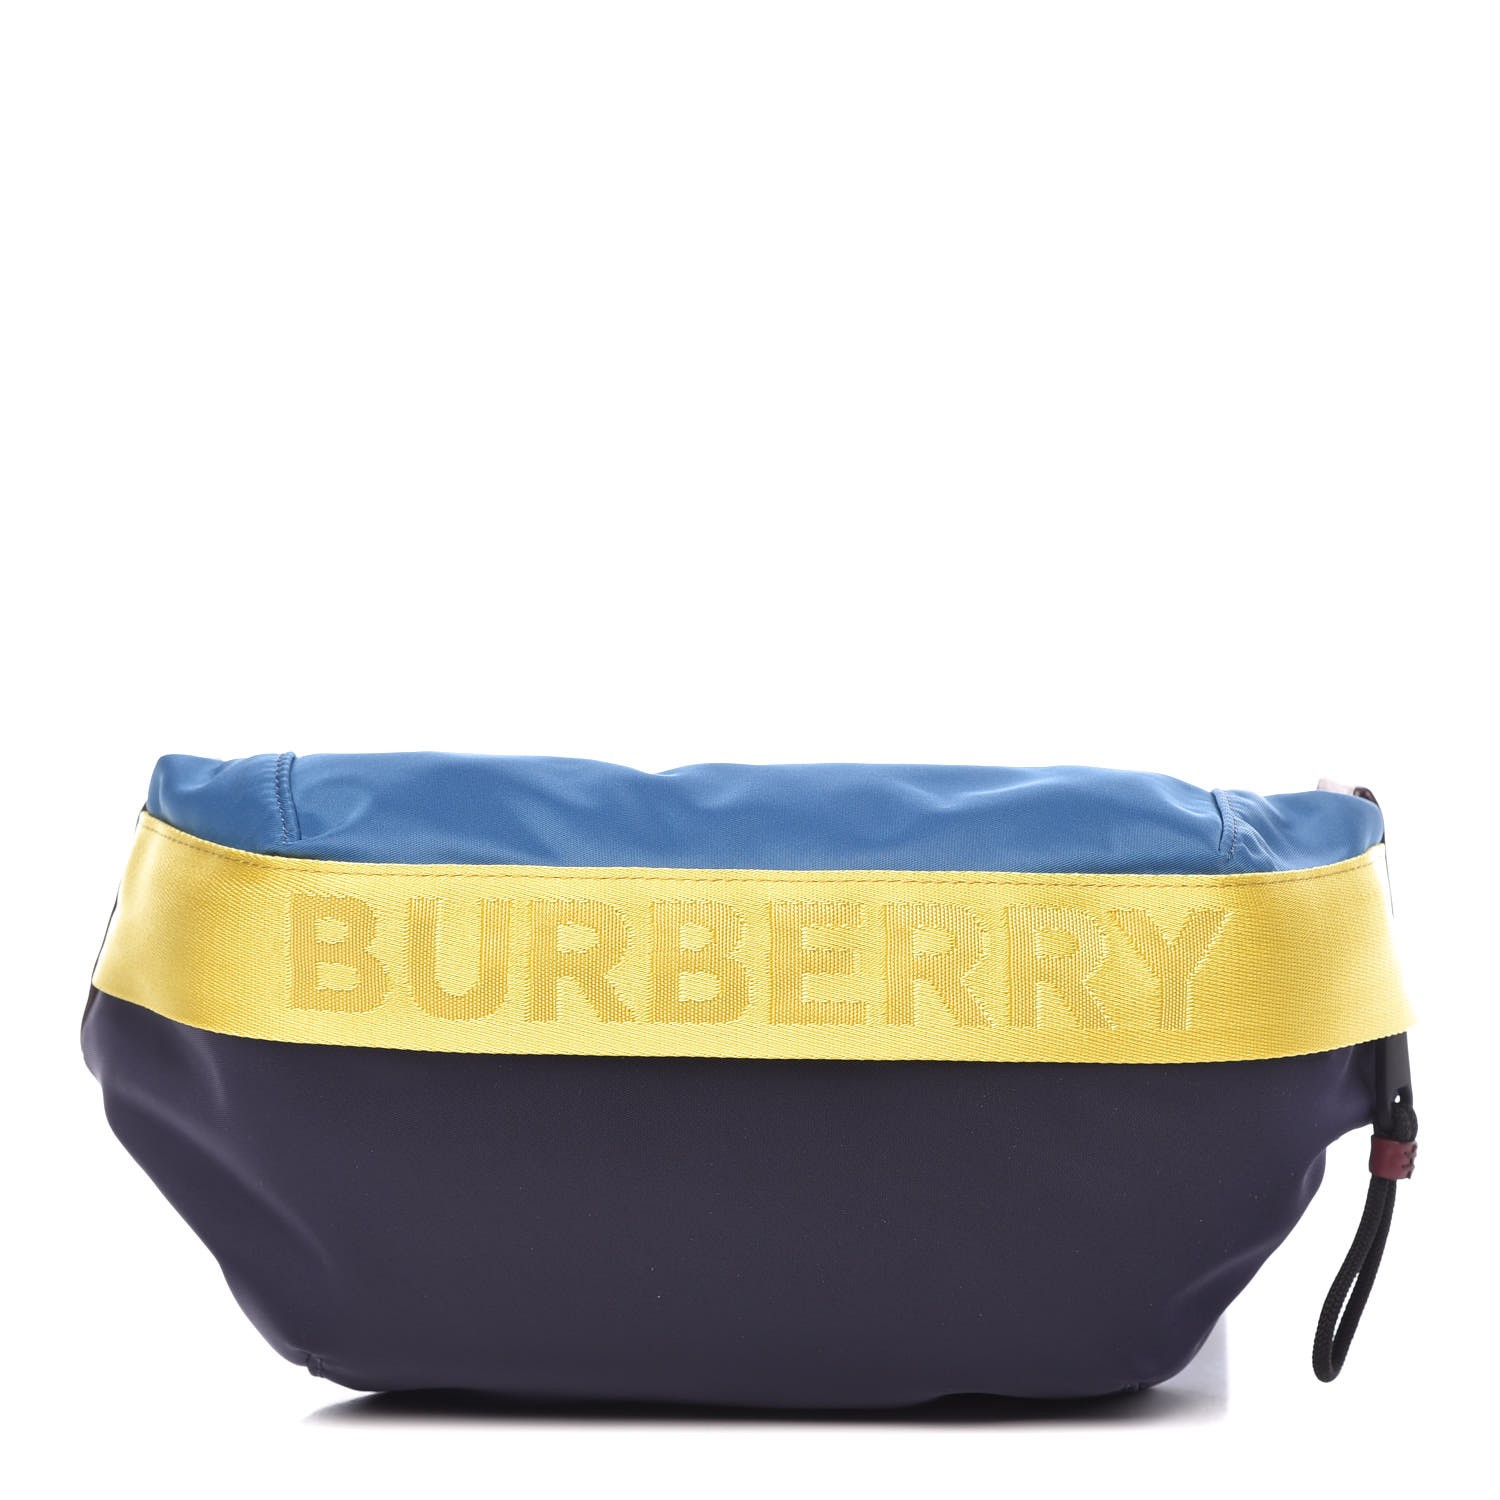 burberry waist pouch